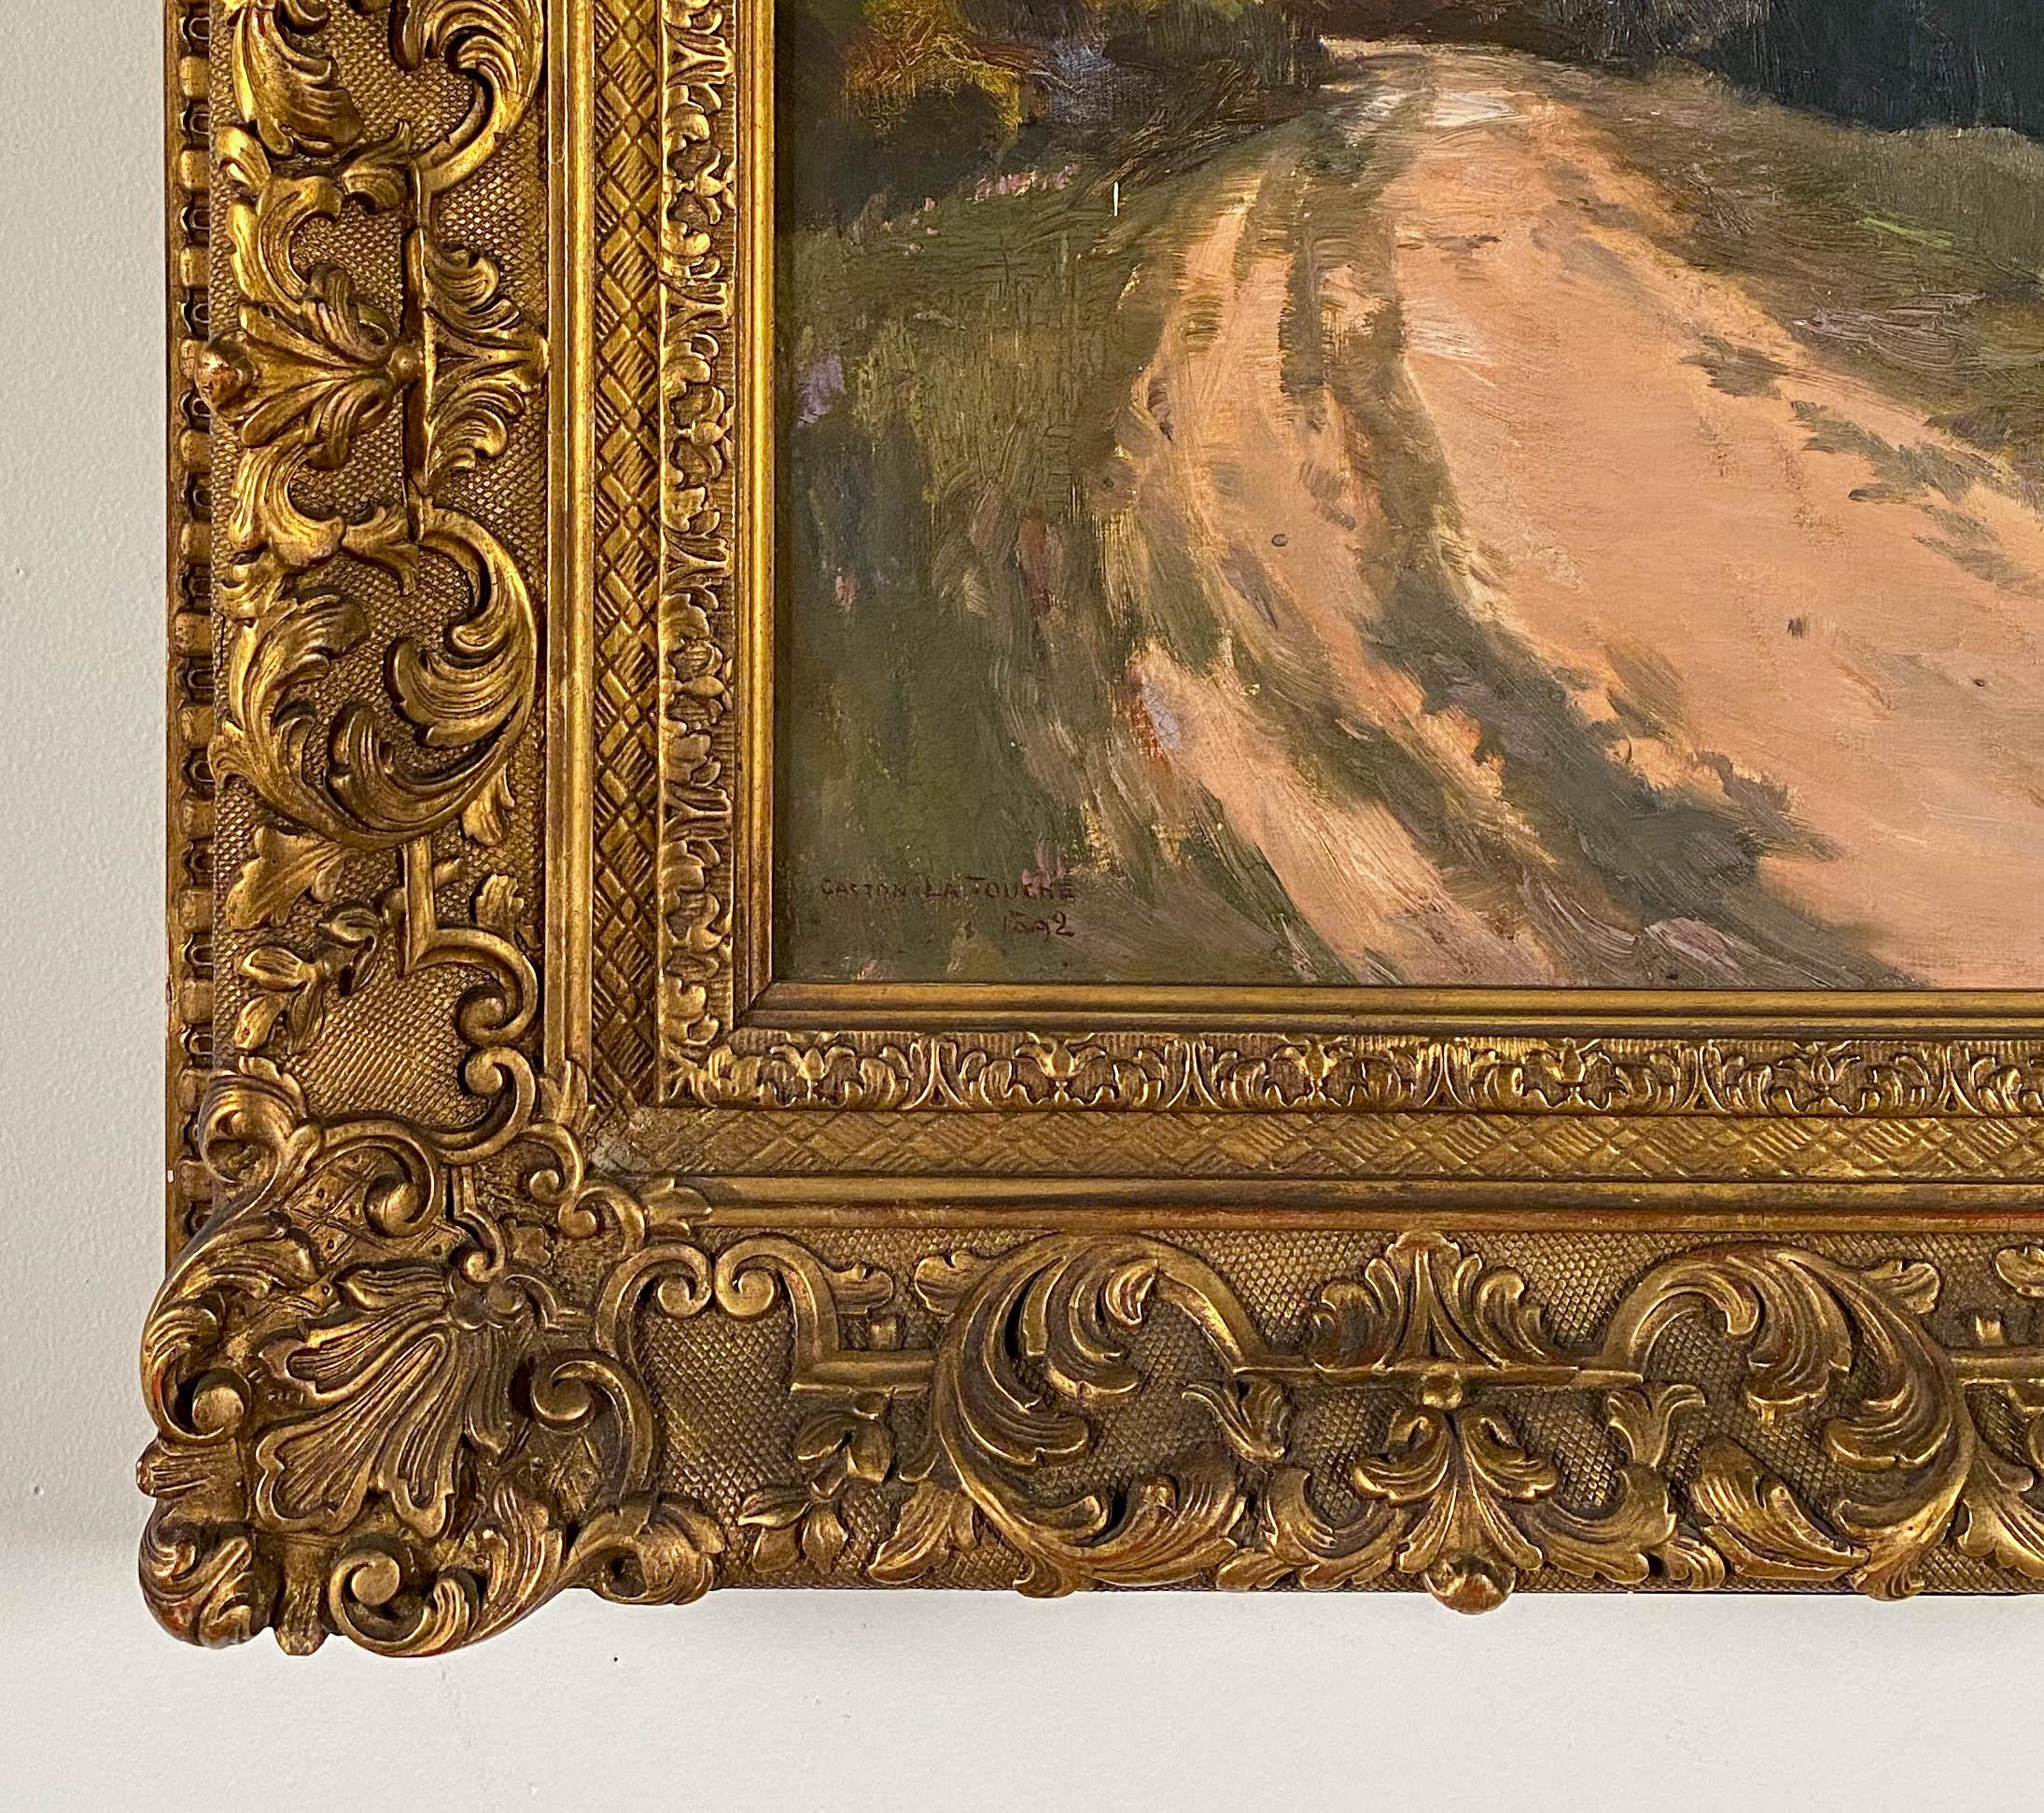 An Impressionist Landscape - Brown Landscape Painting by Gaston de Latouche